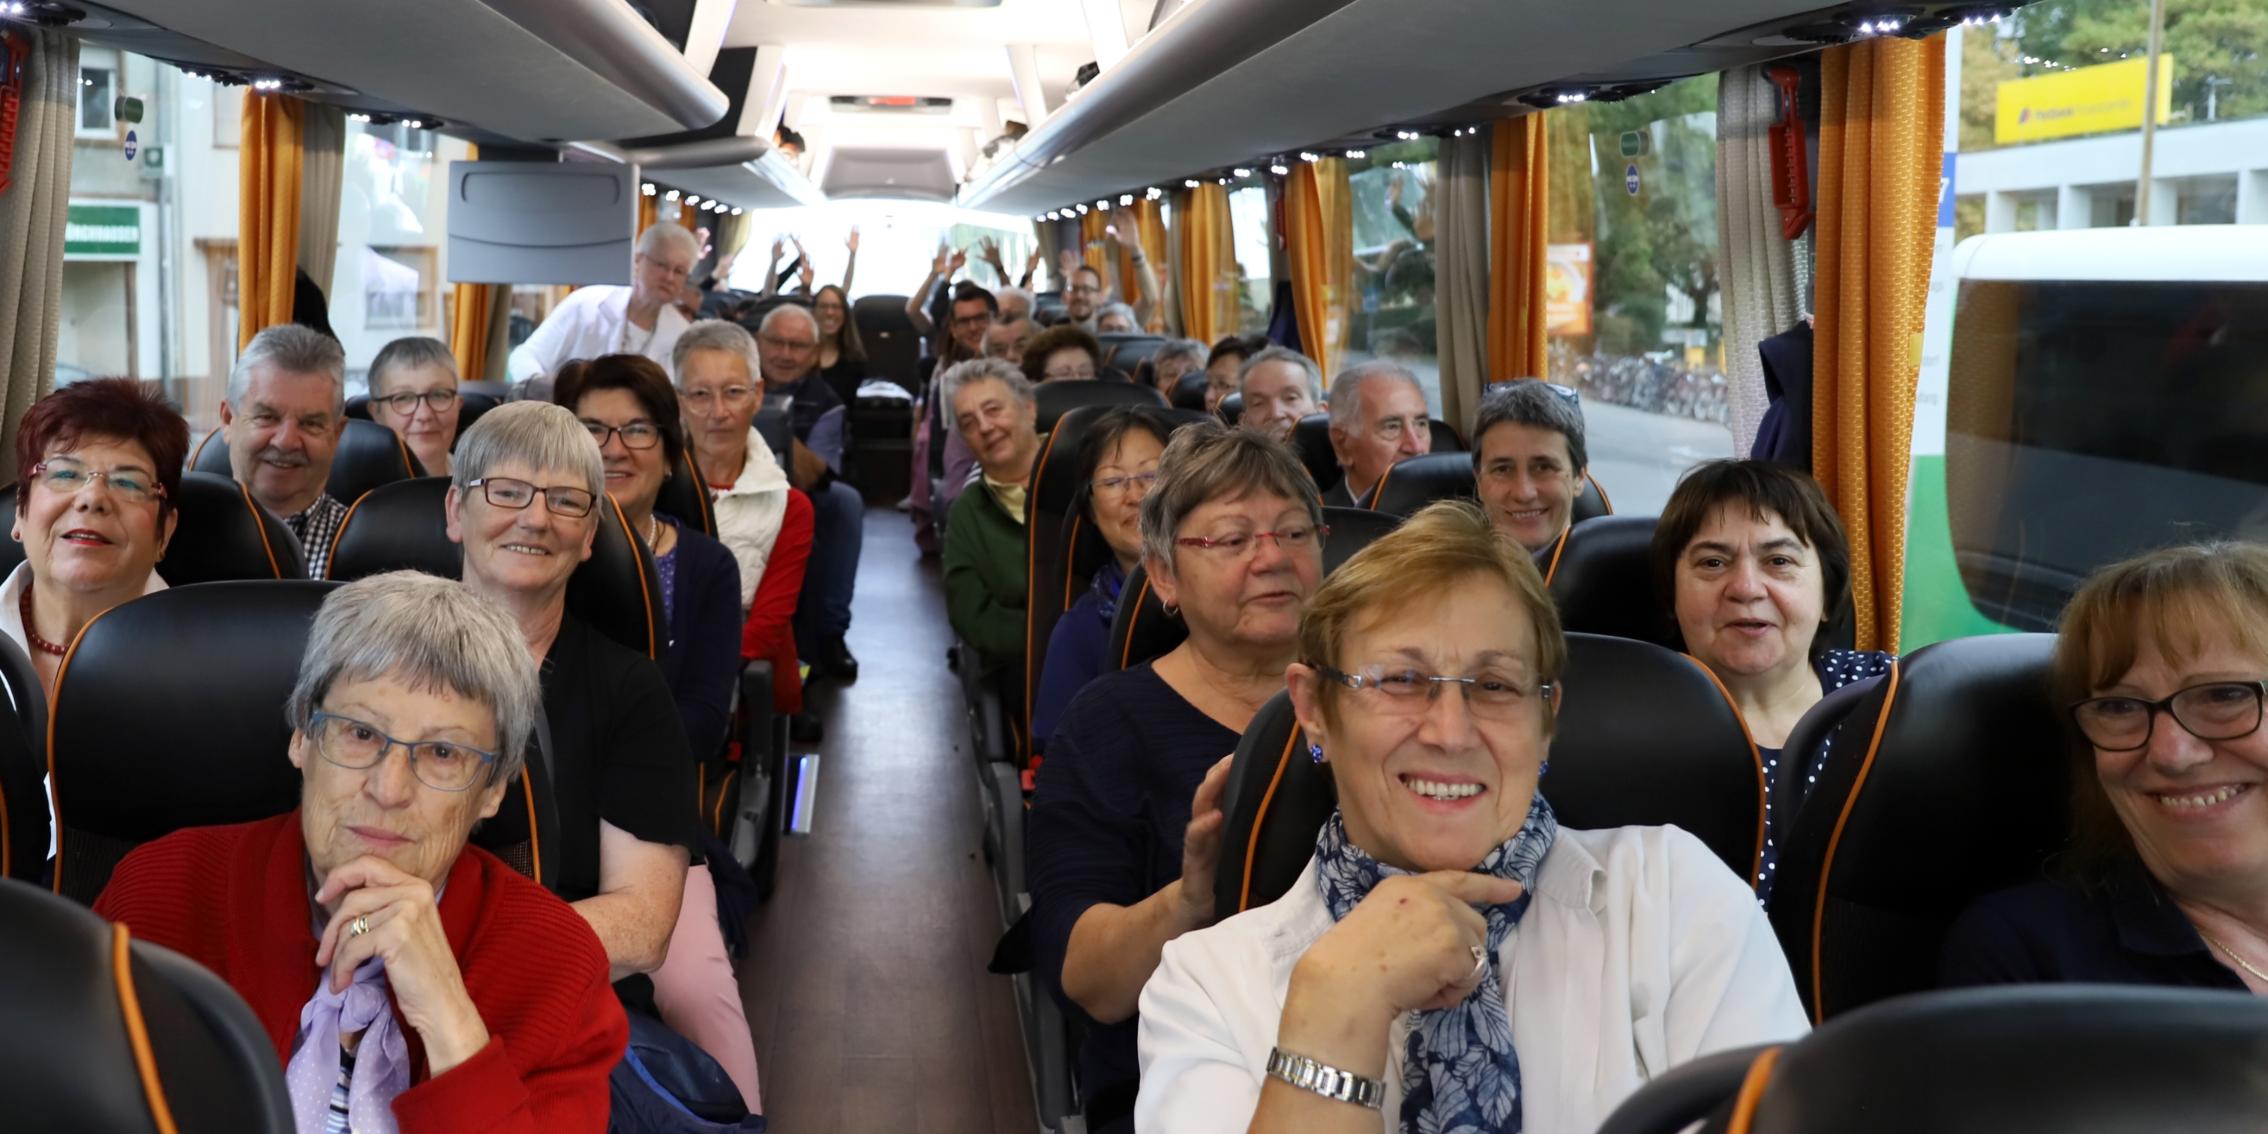 Mit viel Vorfreude geht die Busreise zur Wallfahrt nach Lourdes los